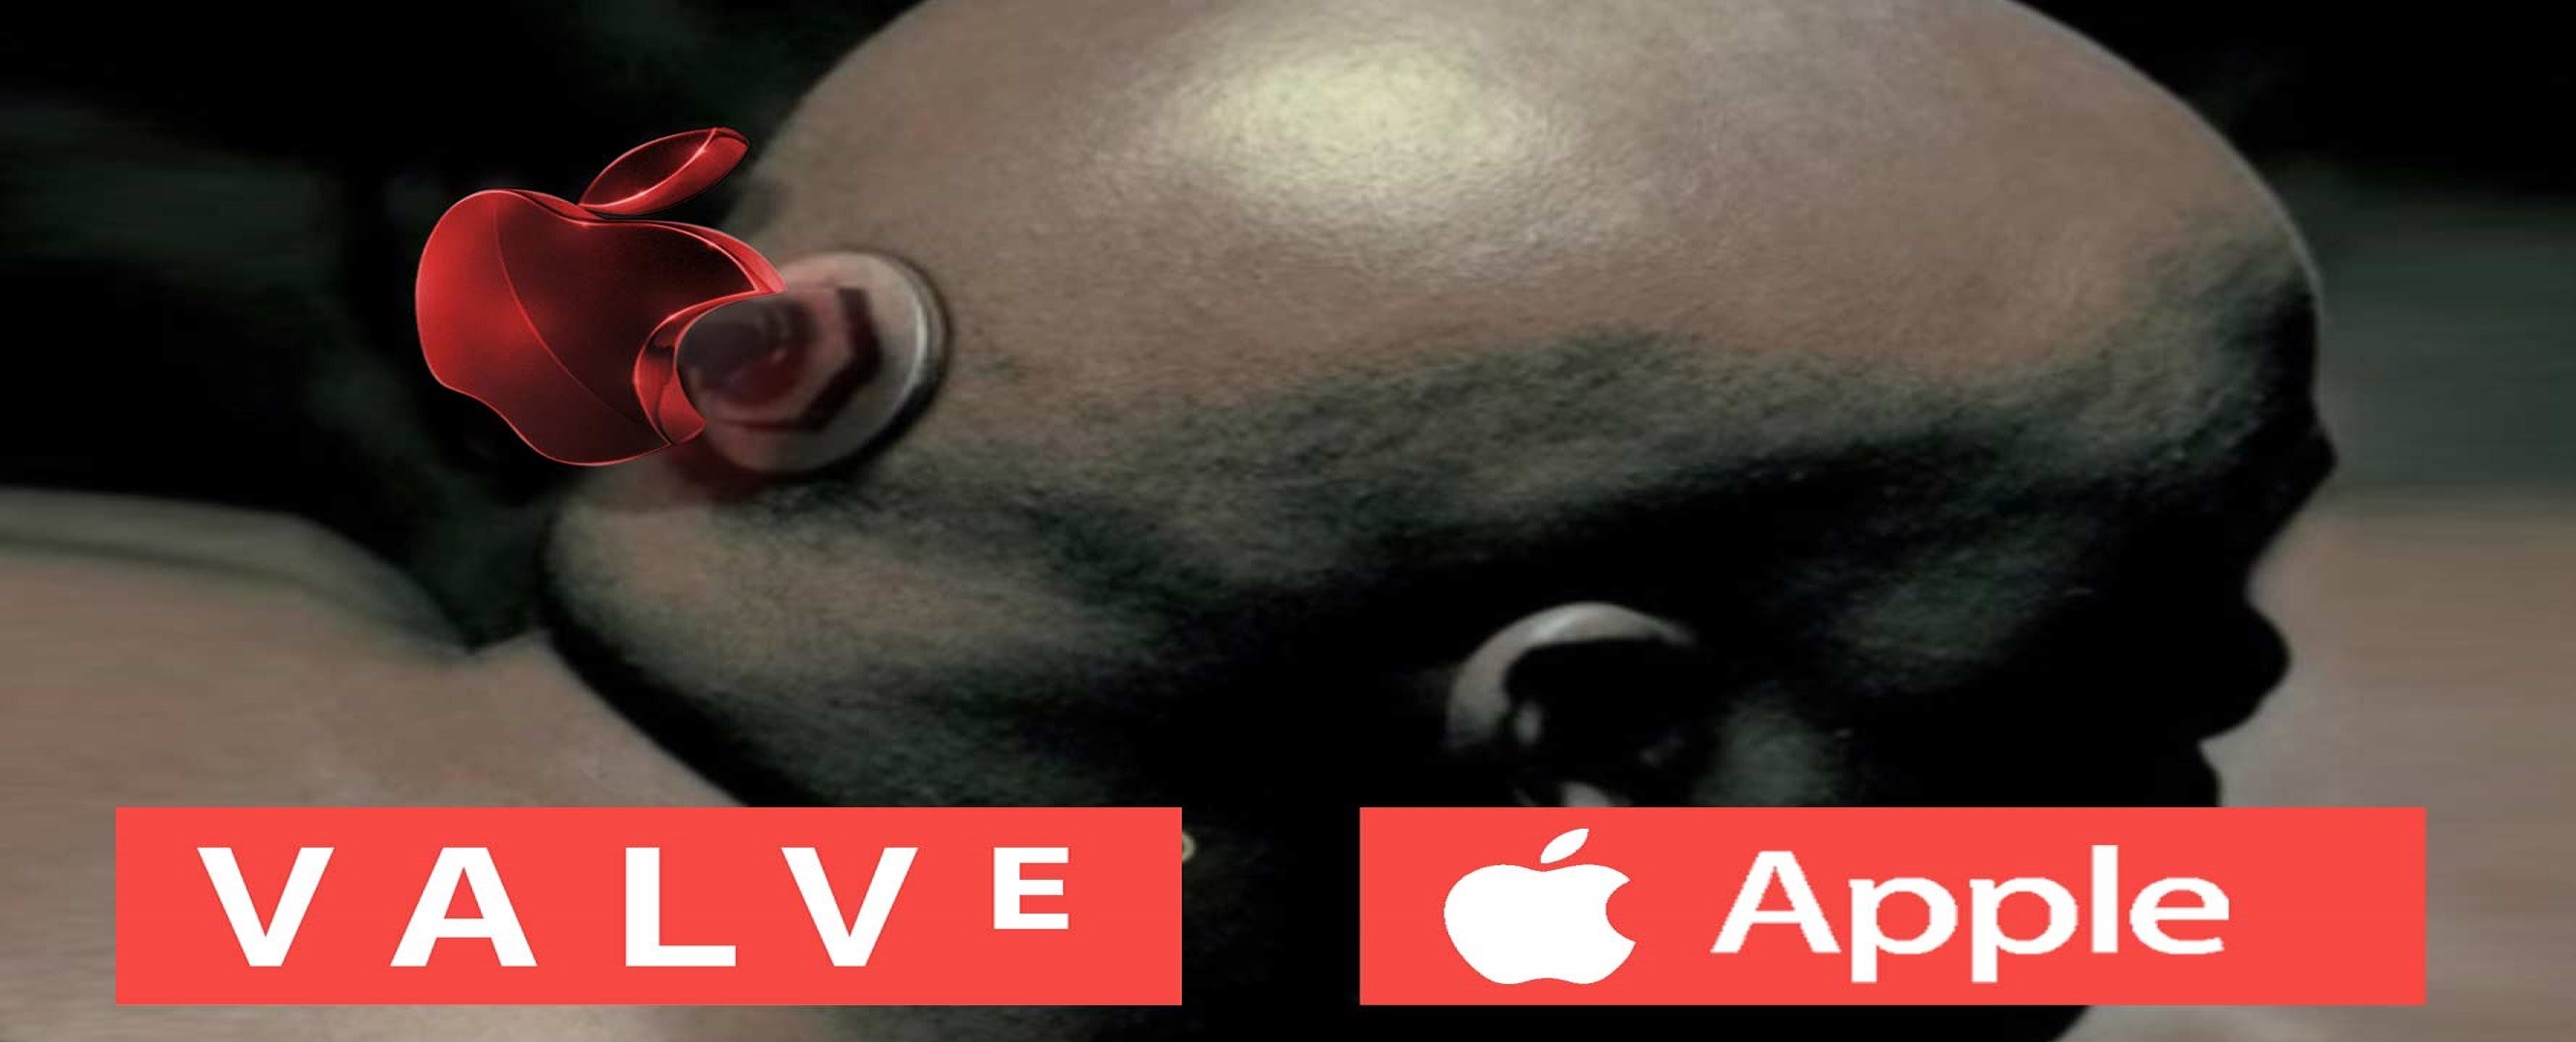 (INOCENTADA) Apple y Valve, socios en un nuevo visor